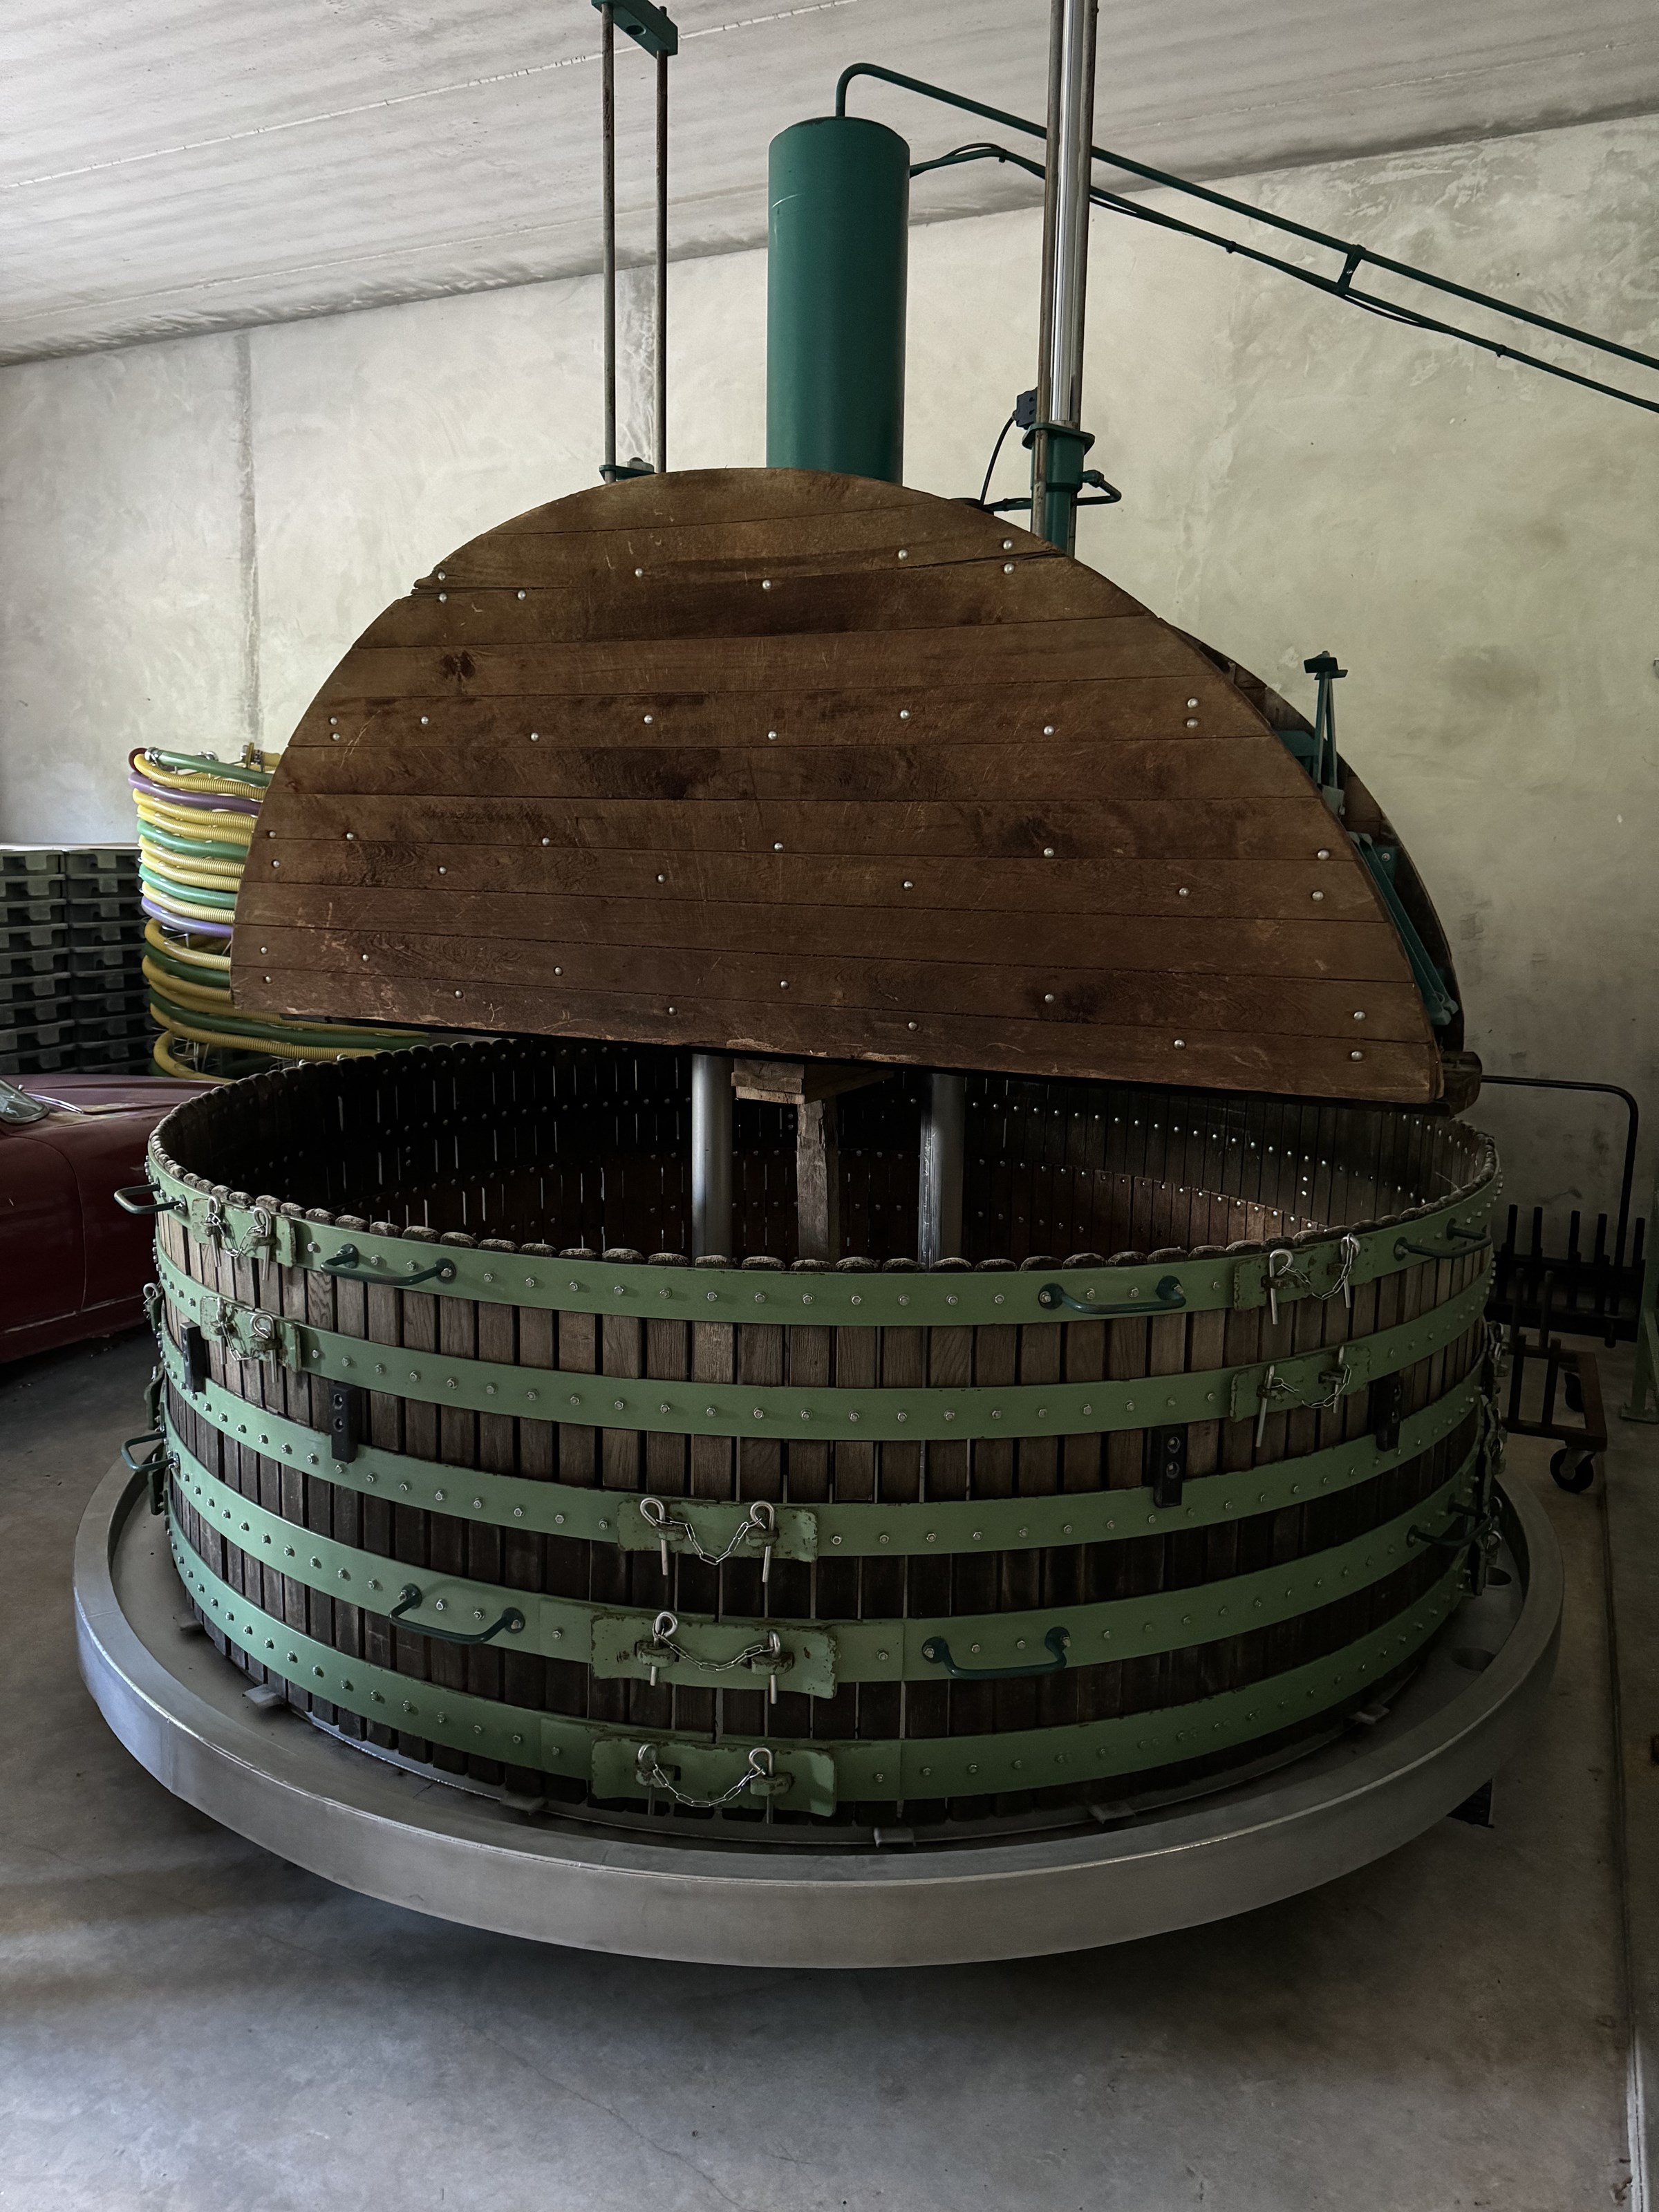 <p>Hos Barrat-Masson er kvaliteten p&aring; druene i h&oslash;ysetet, og Lo&iuml;c's arbeid og presisjon i vinmarkene er uvurderlig. Sunne druer h&oslash;stes ved optimal modning. Deretter tar Aur&eacute;lie over og vinifikasjonen blir utf&oslash;rt etter hennes ekspertise. To Coquard-presser, p&aring; henholdsvis 2000 kg og 4000 kg, benyttes til den parsellvise pressingen. Aur&eacute;lie deler mosten i hele fem fraksjoner, det gjennomf&oslash;res alts&aring; fem retrousse, som gir et bredt utvalg baseviner. Etter 24 timers sedimentering vinifiseres mosten i enten rustfrie st&aring;ltanker eller 300- og 600-liters eikefat. Vinene ligger p&aring; bunnfall uten omr&oslash;ring frem til de tappes p&aring; flaske uten klaring eller filtrering i juli. Etter lagring p&aring; bunnfallet i minimum 30 m&aring;neder, degorgeres flaskene for h&aring;nd. Sm&aring; mengder sulfitt tilsettes ved pressing og tapping. Ingen av vinene har tilsatt <em>dosage</em>.</p>